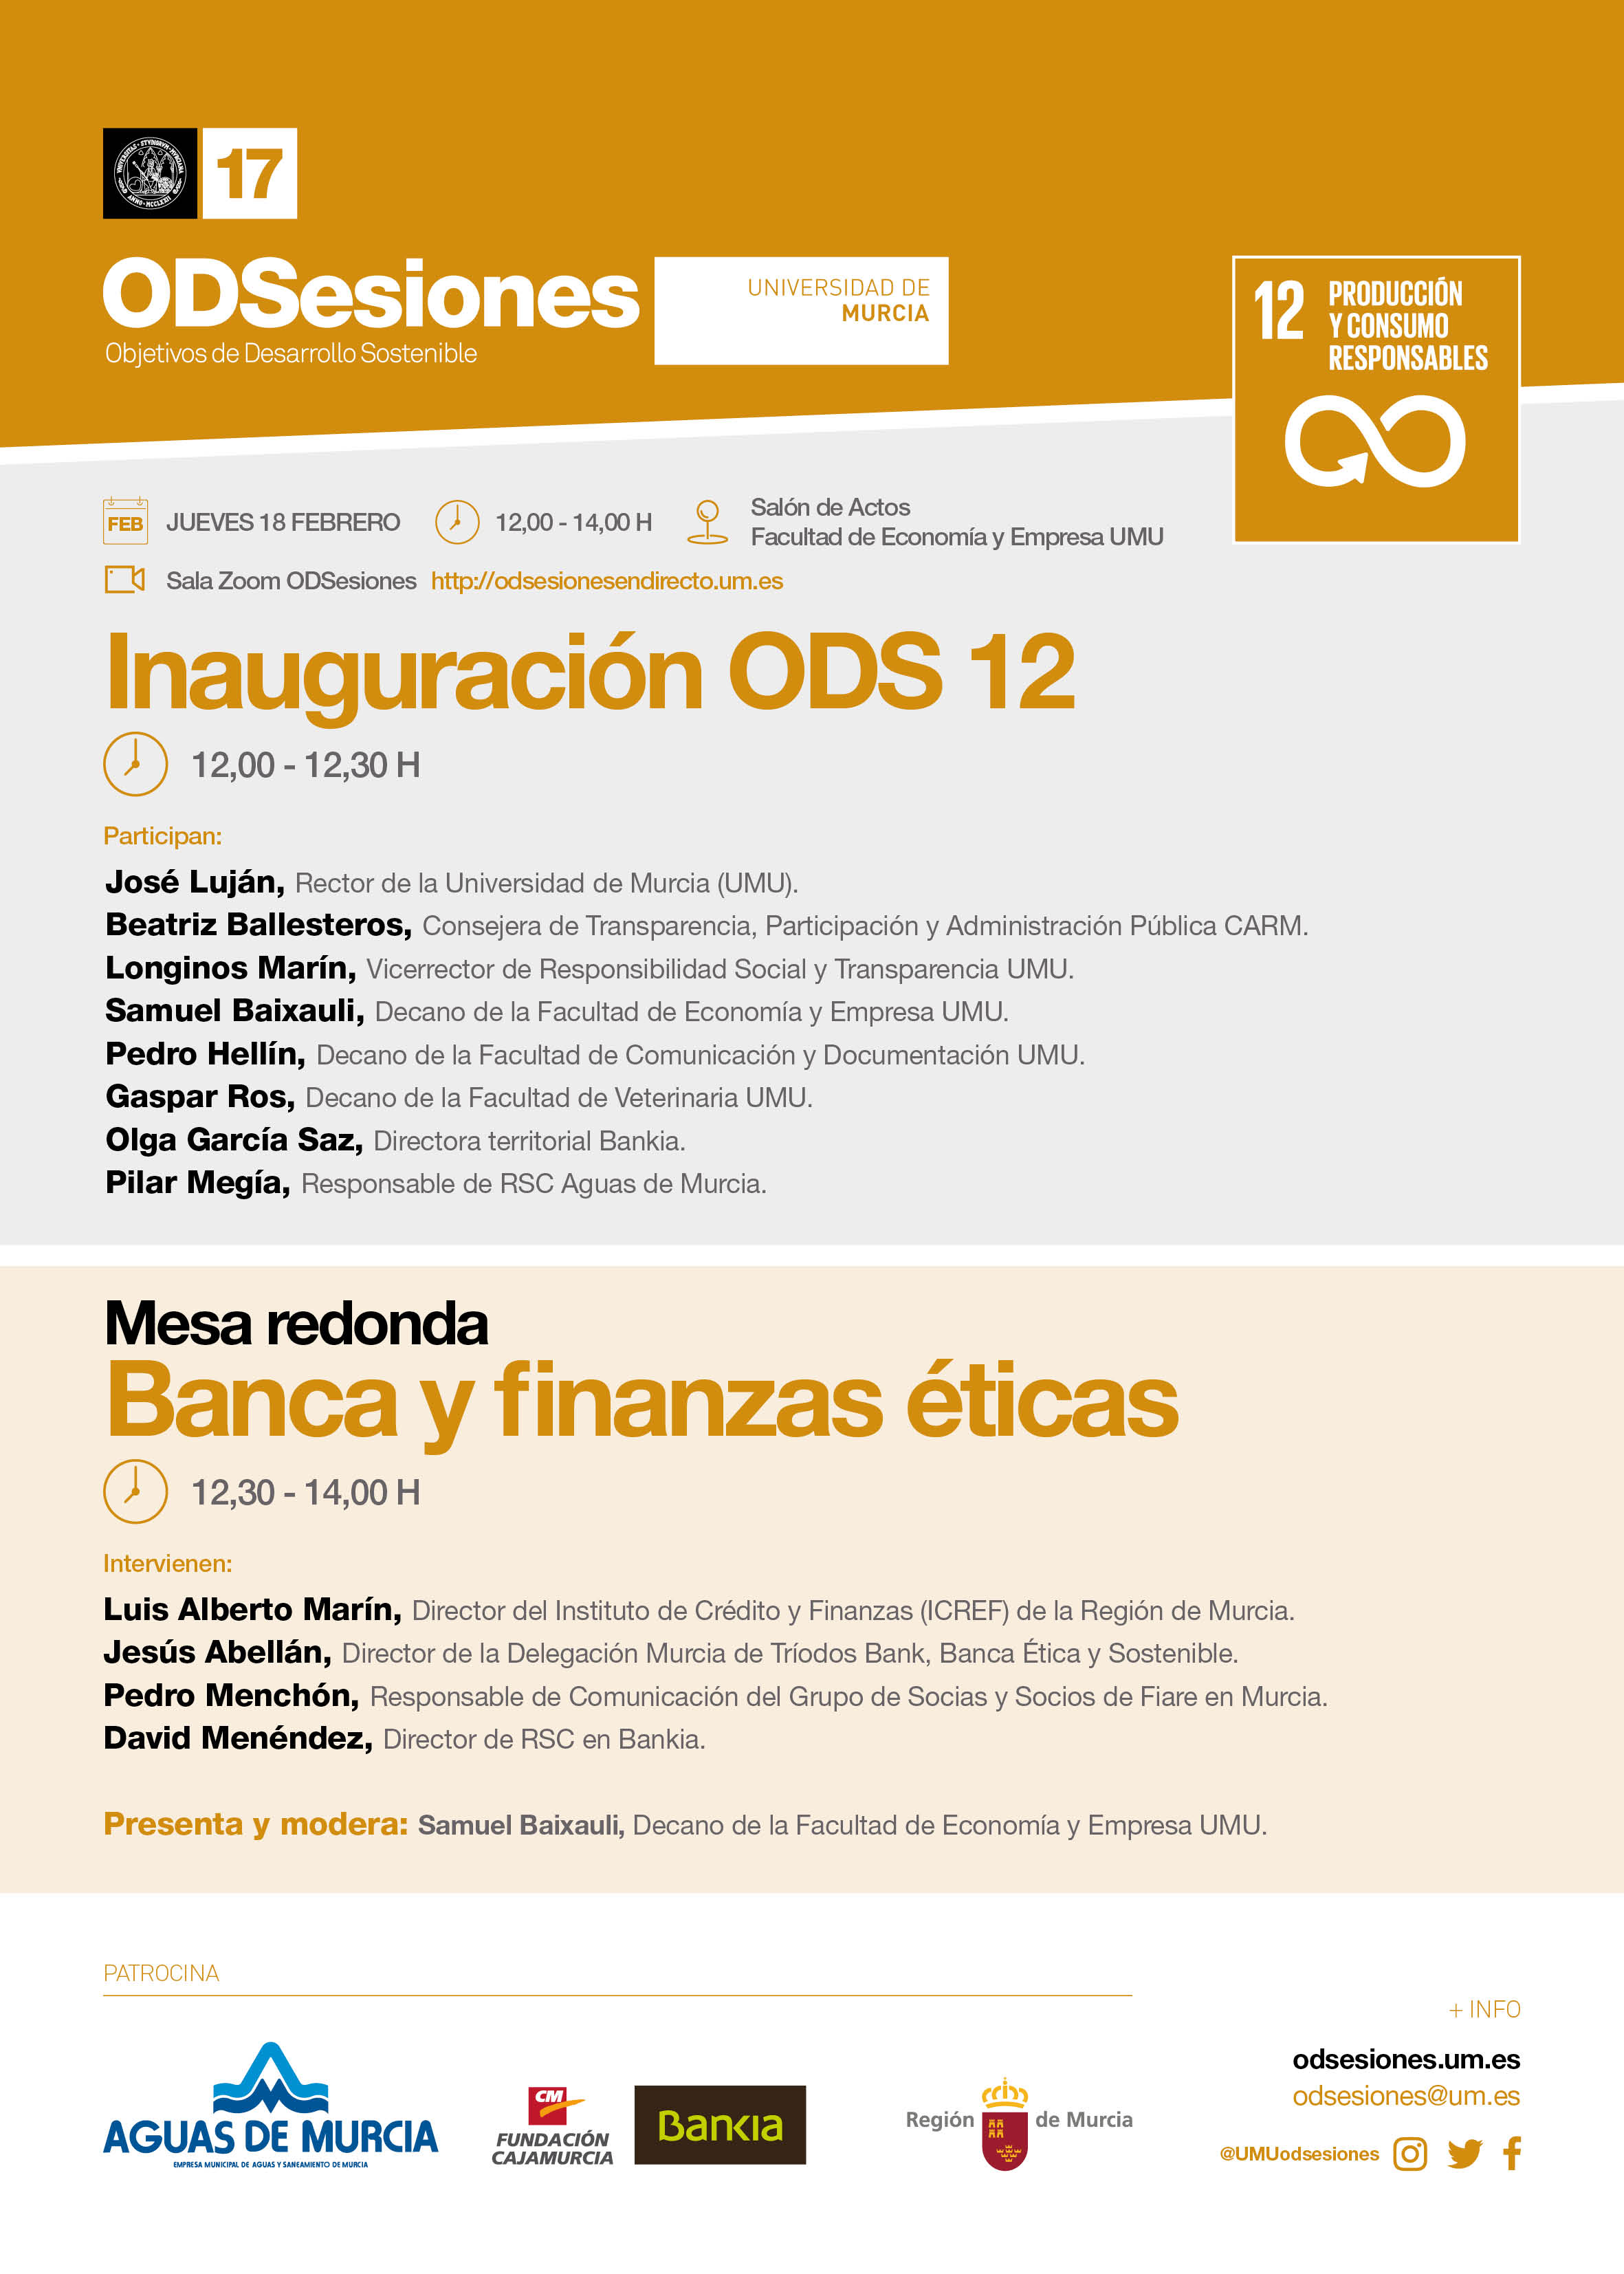 Inauguración del ODS 12 de ODSesiones de la Universidad de Murcia